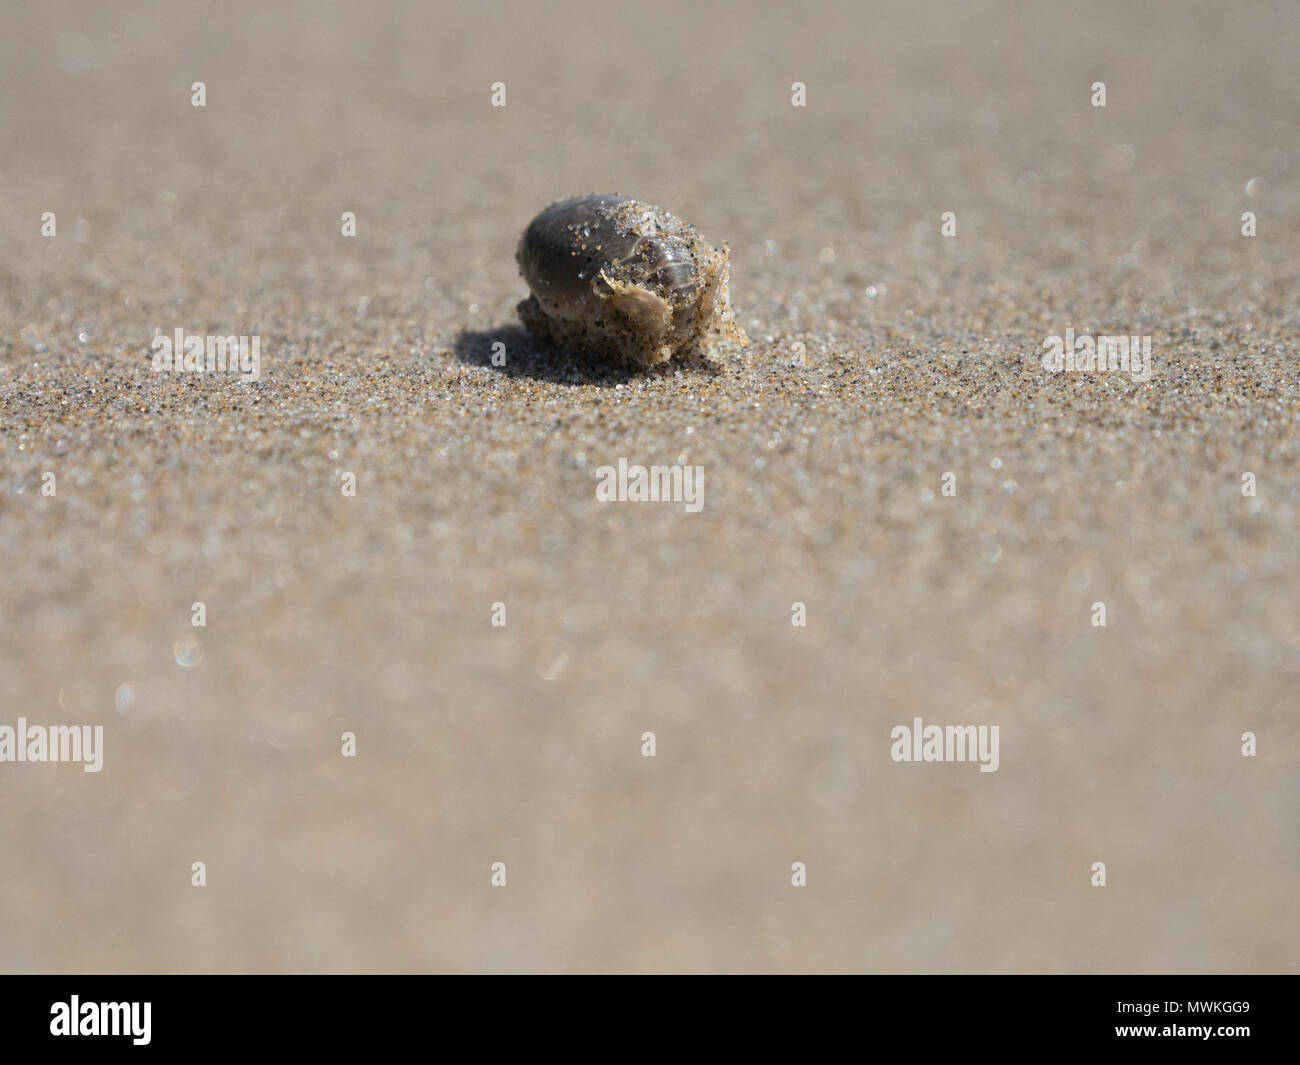 Cangrejo ermitaño escondido en una concha en la playa en la playa Crescent Oregon fotografiados con una profundidad de campo limitada Foto de stock